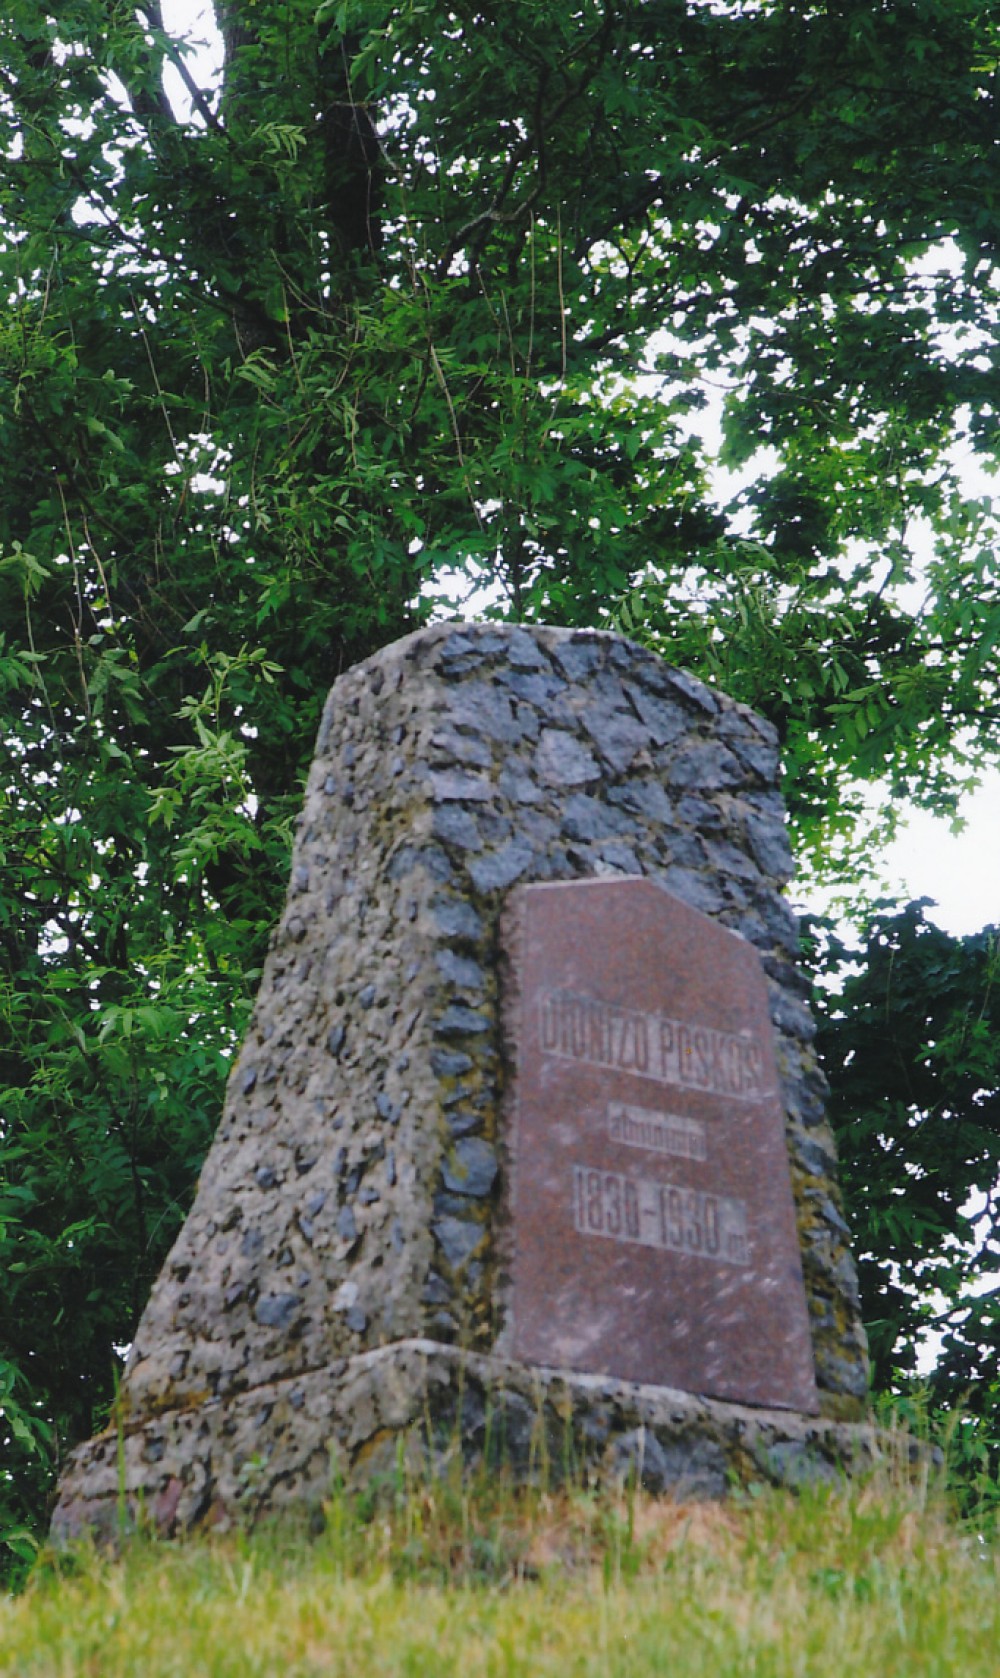 D. Poškos muziejus Bijotuose (Šilalės r.). D. Poškos atminimui skirtas paminklinis akmuo, pastatytas 1930 m. 2008 m.